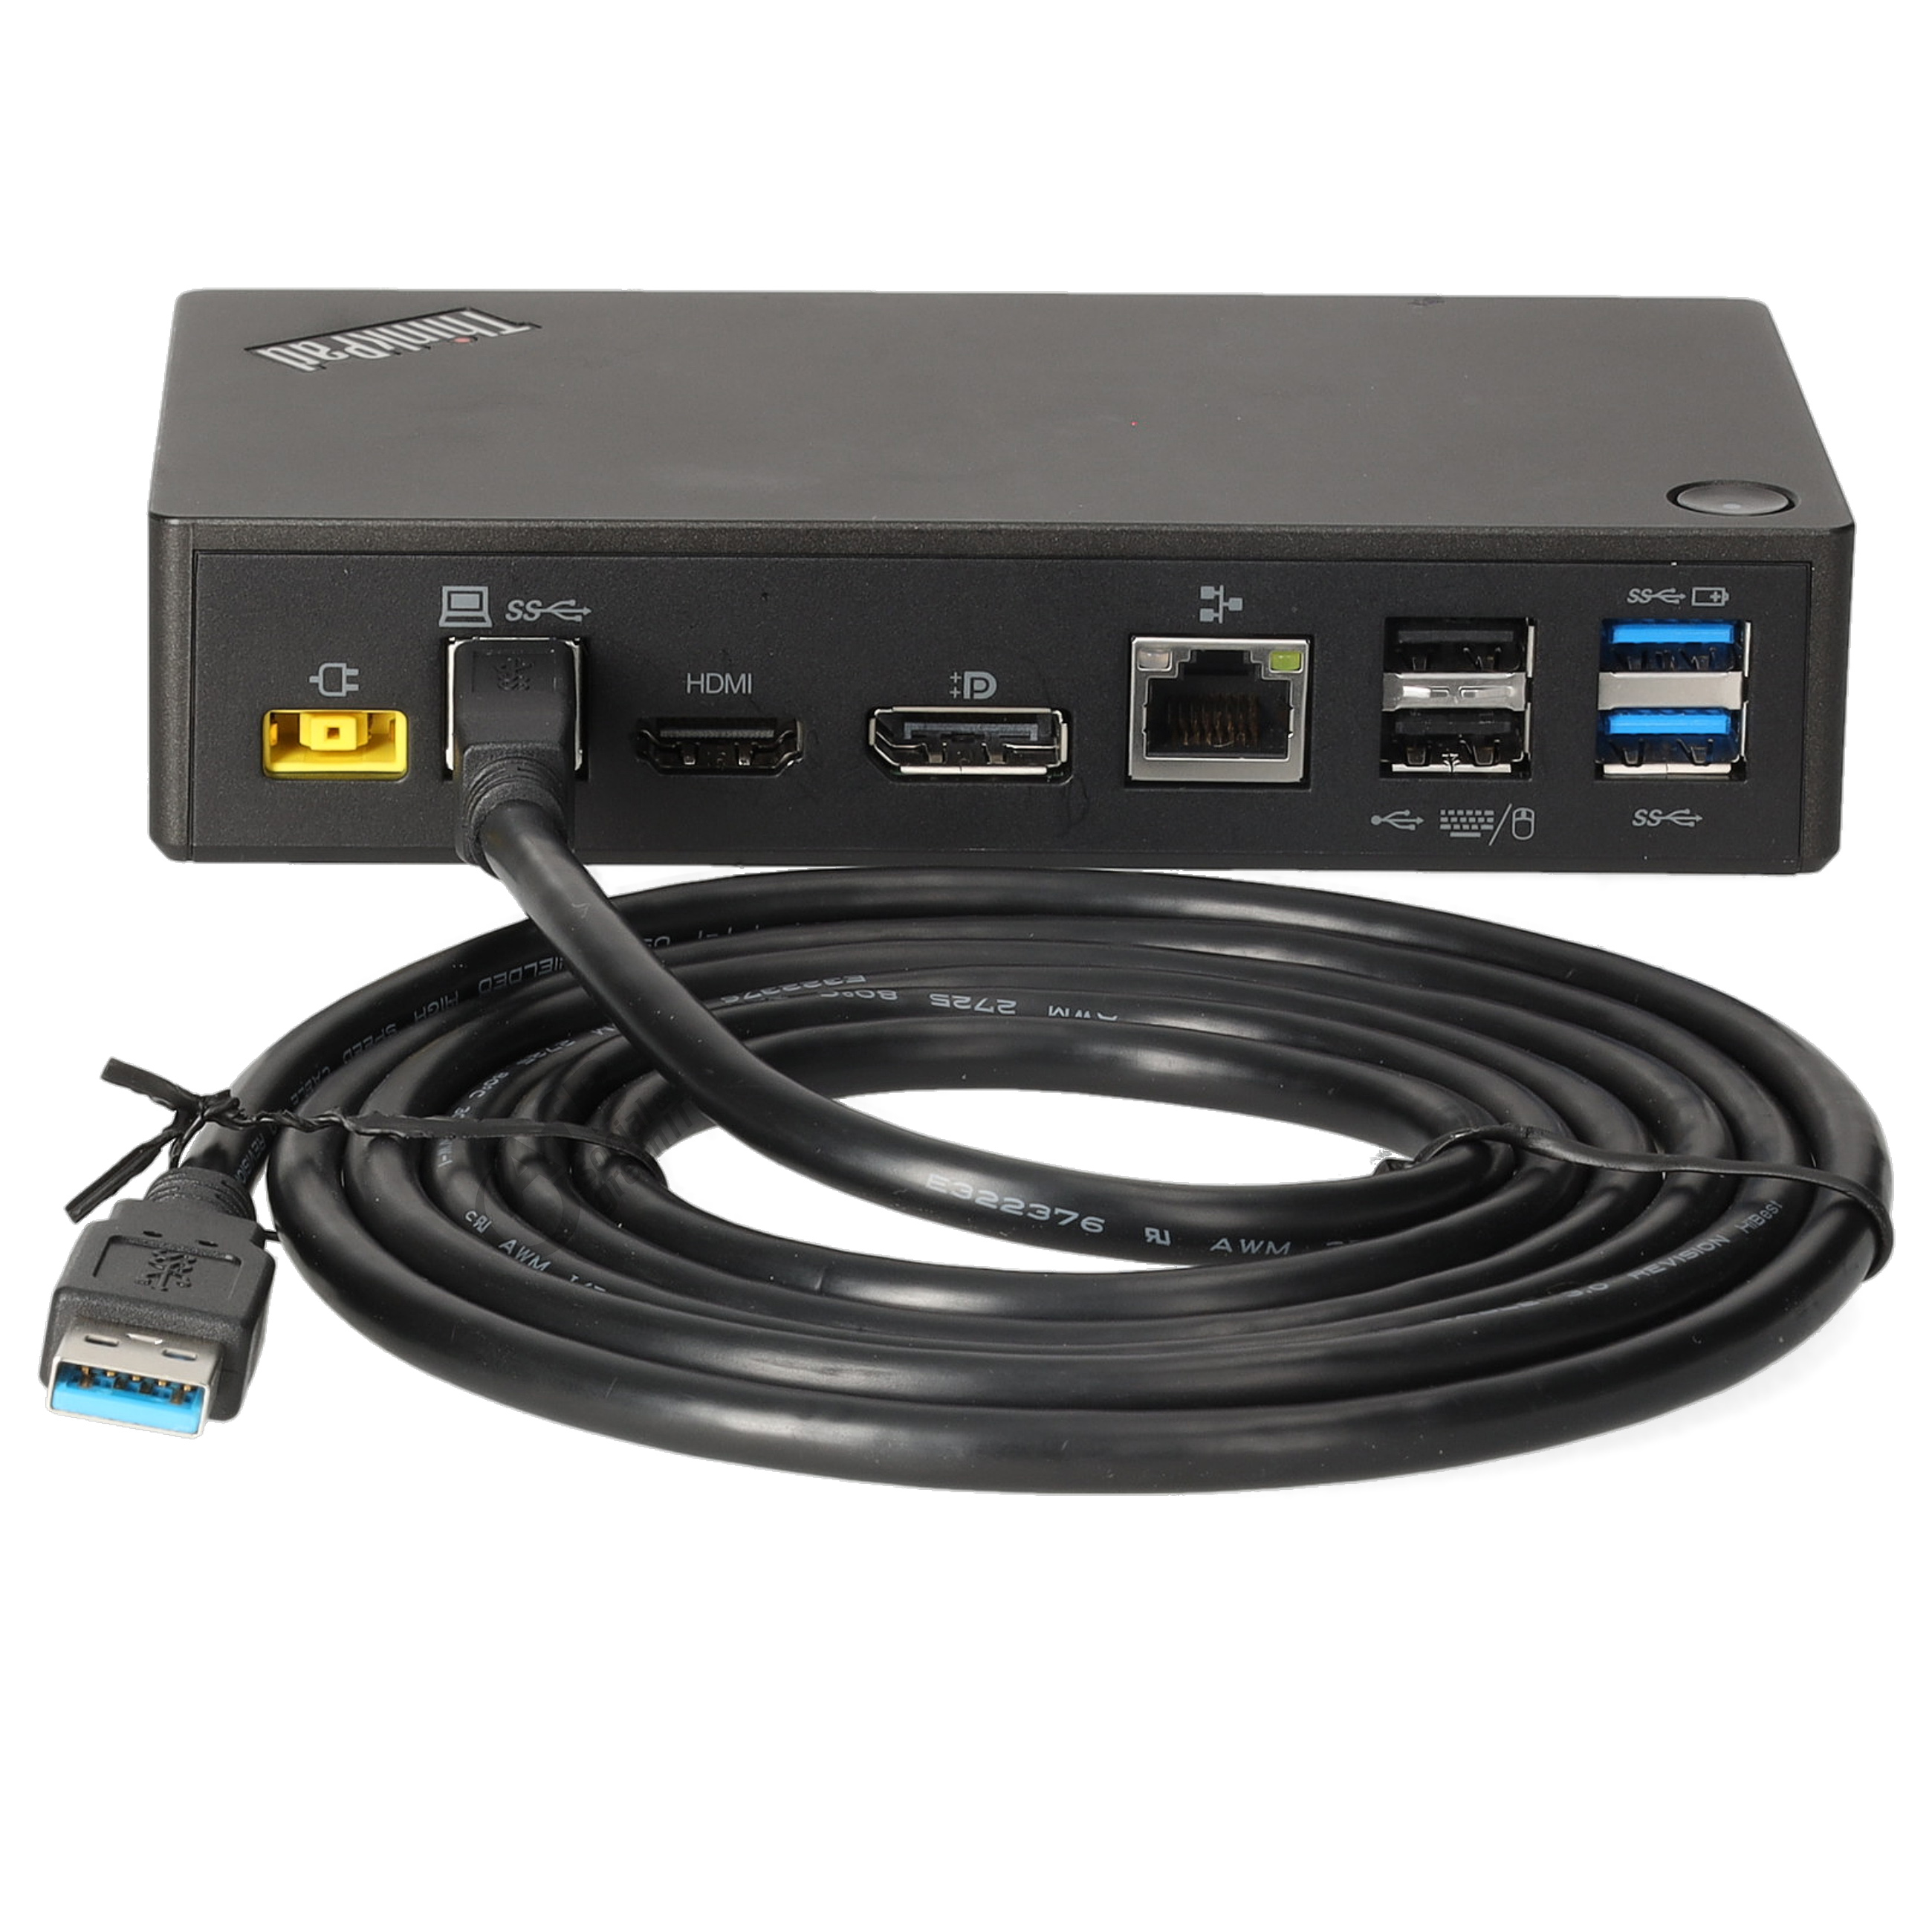 Lenovo ThinkPad USB 3.0 Ultra Dock - 40A8 mit USB Verbindungskabel - ohne Netzteil - Gebraucht